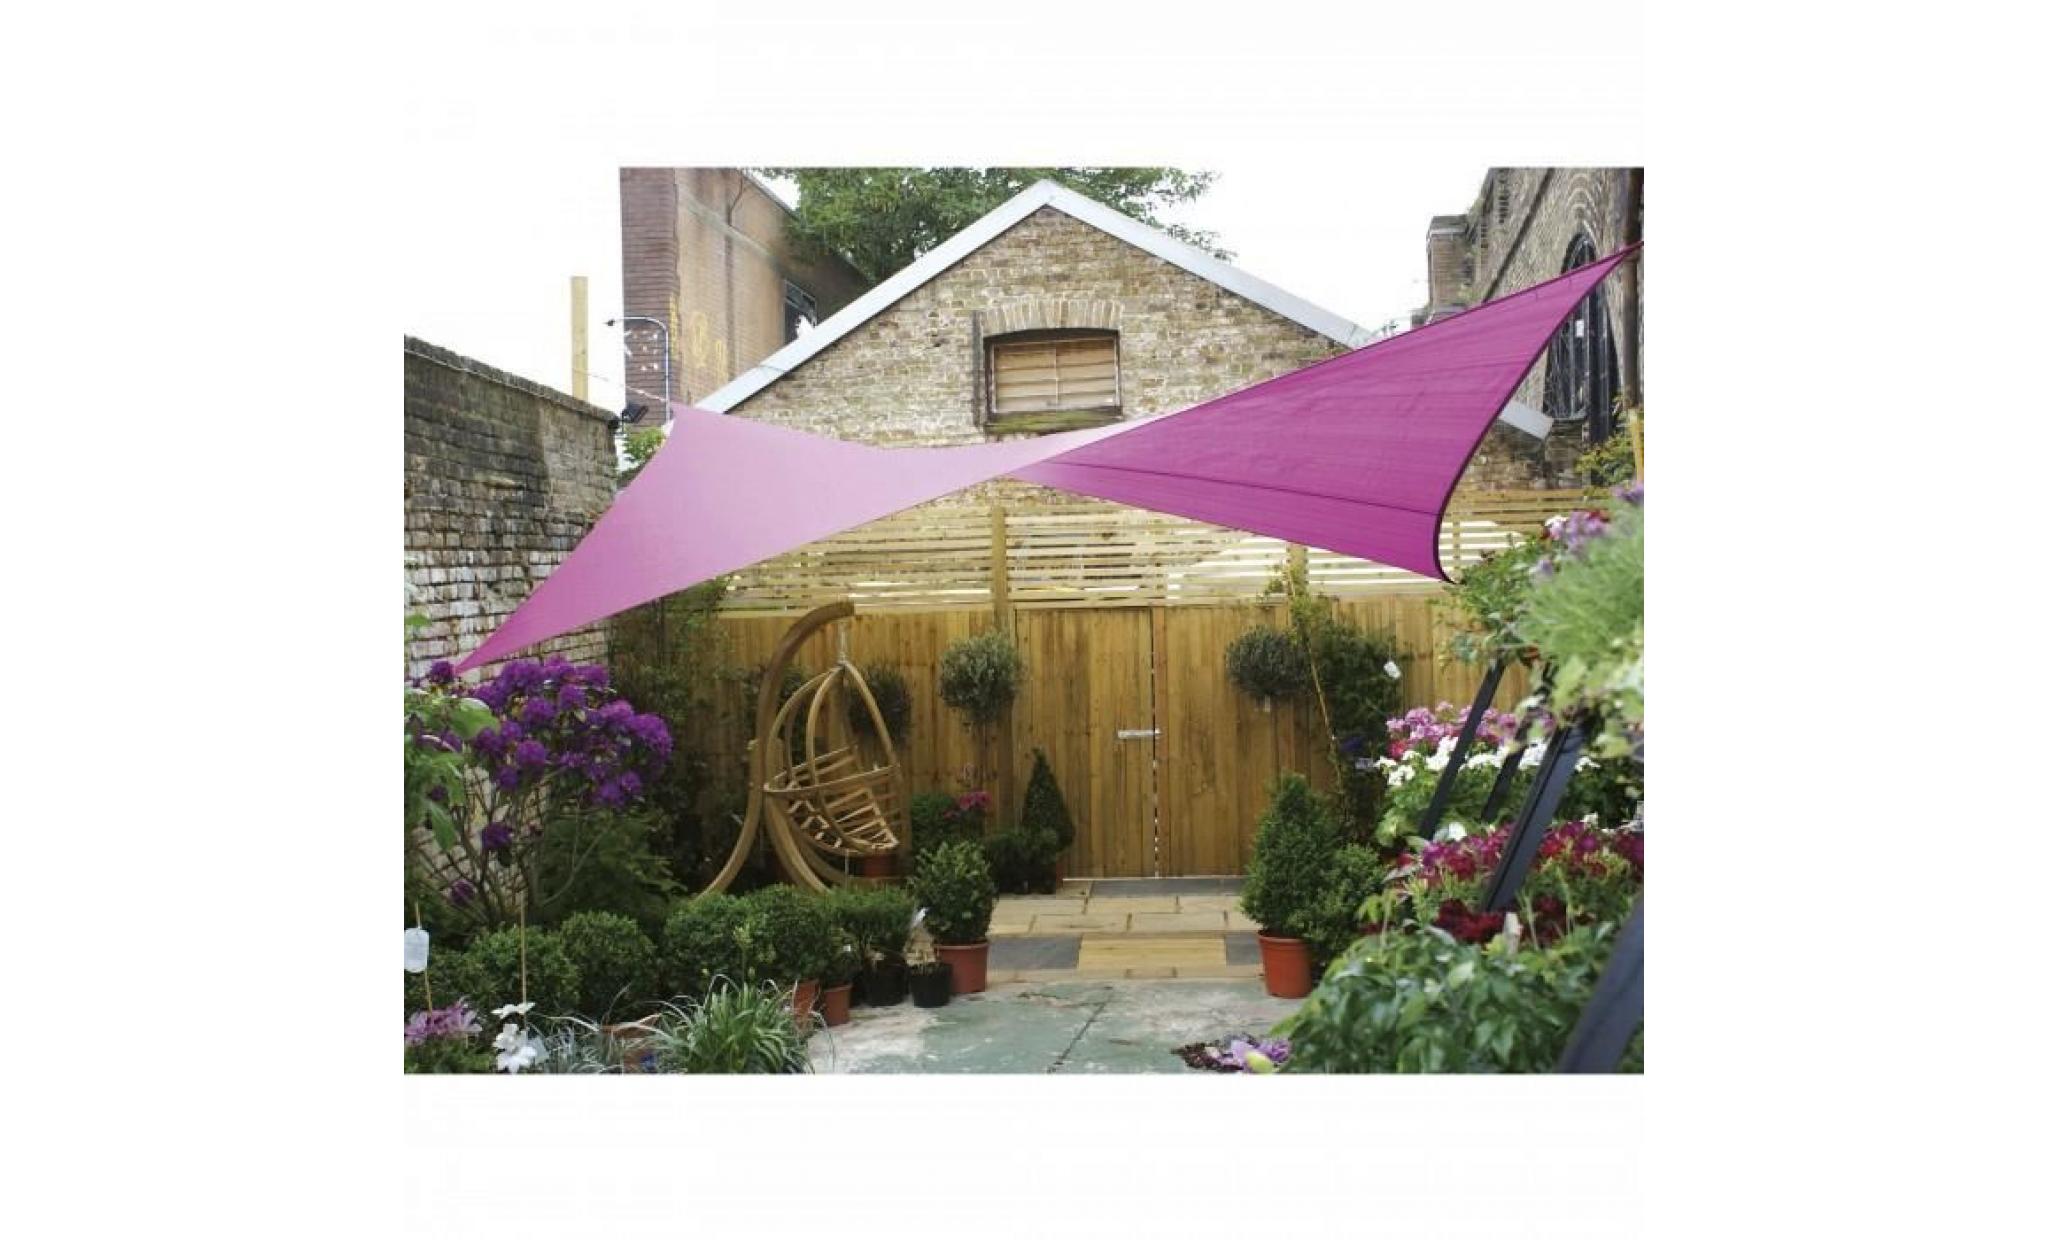 voile d'ombrage carree 3,6m, ideale pour votre jardin et vos terrasses. tres belle toile couleur rose en tissu aere hyd